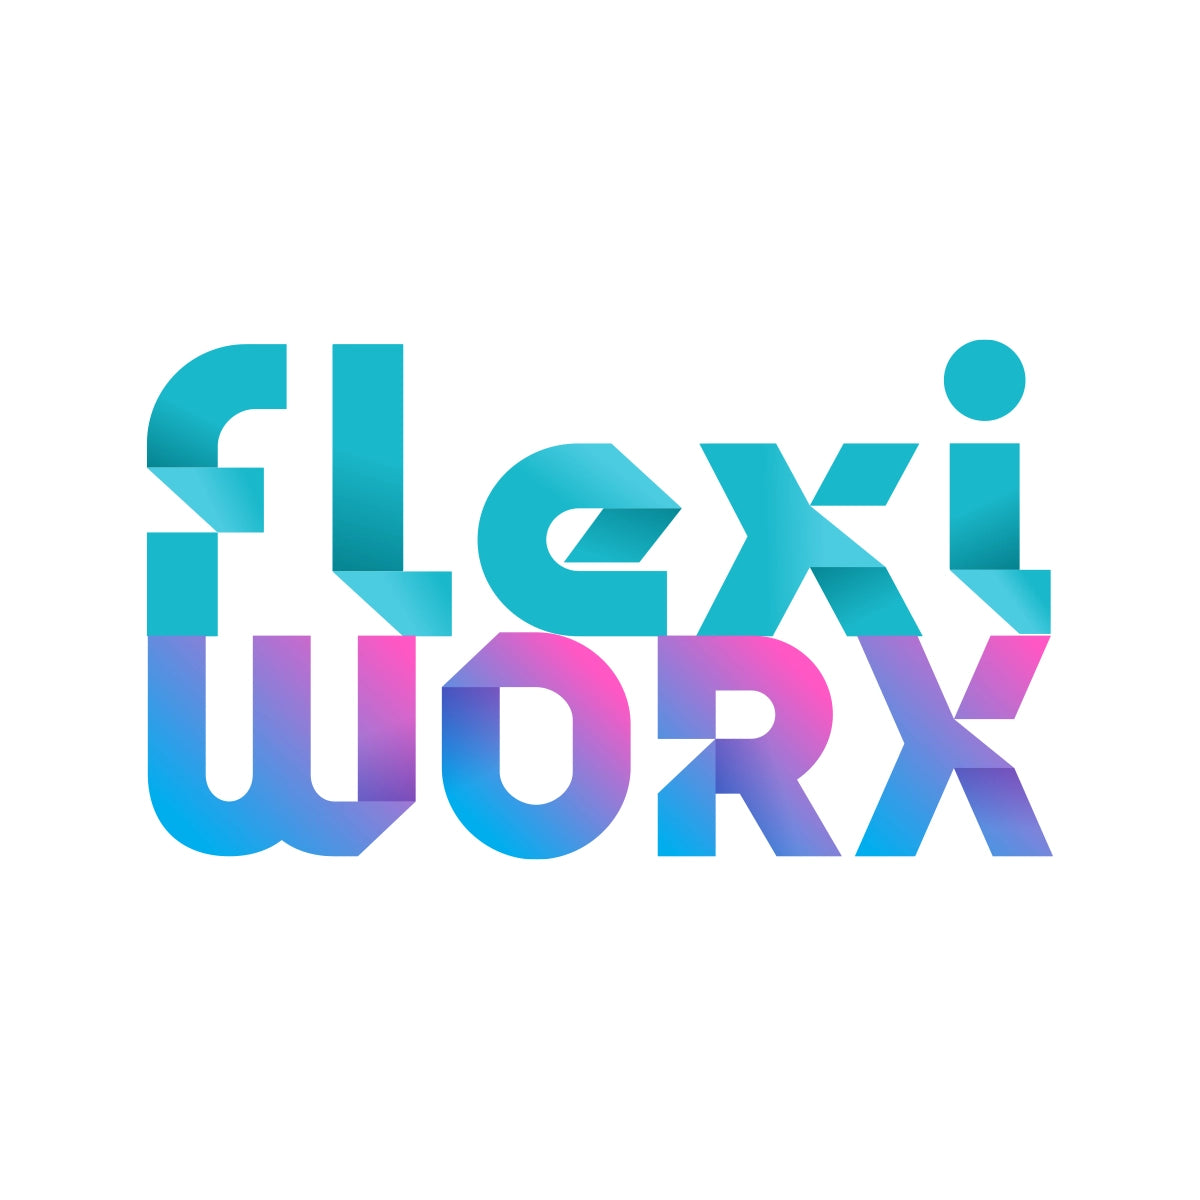 flexiworx.com